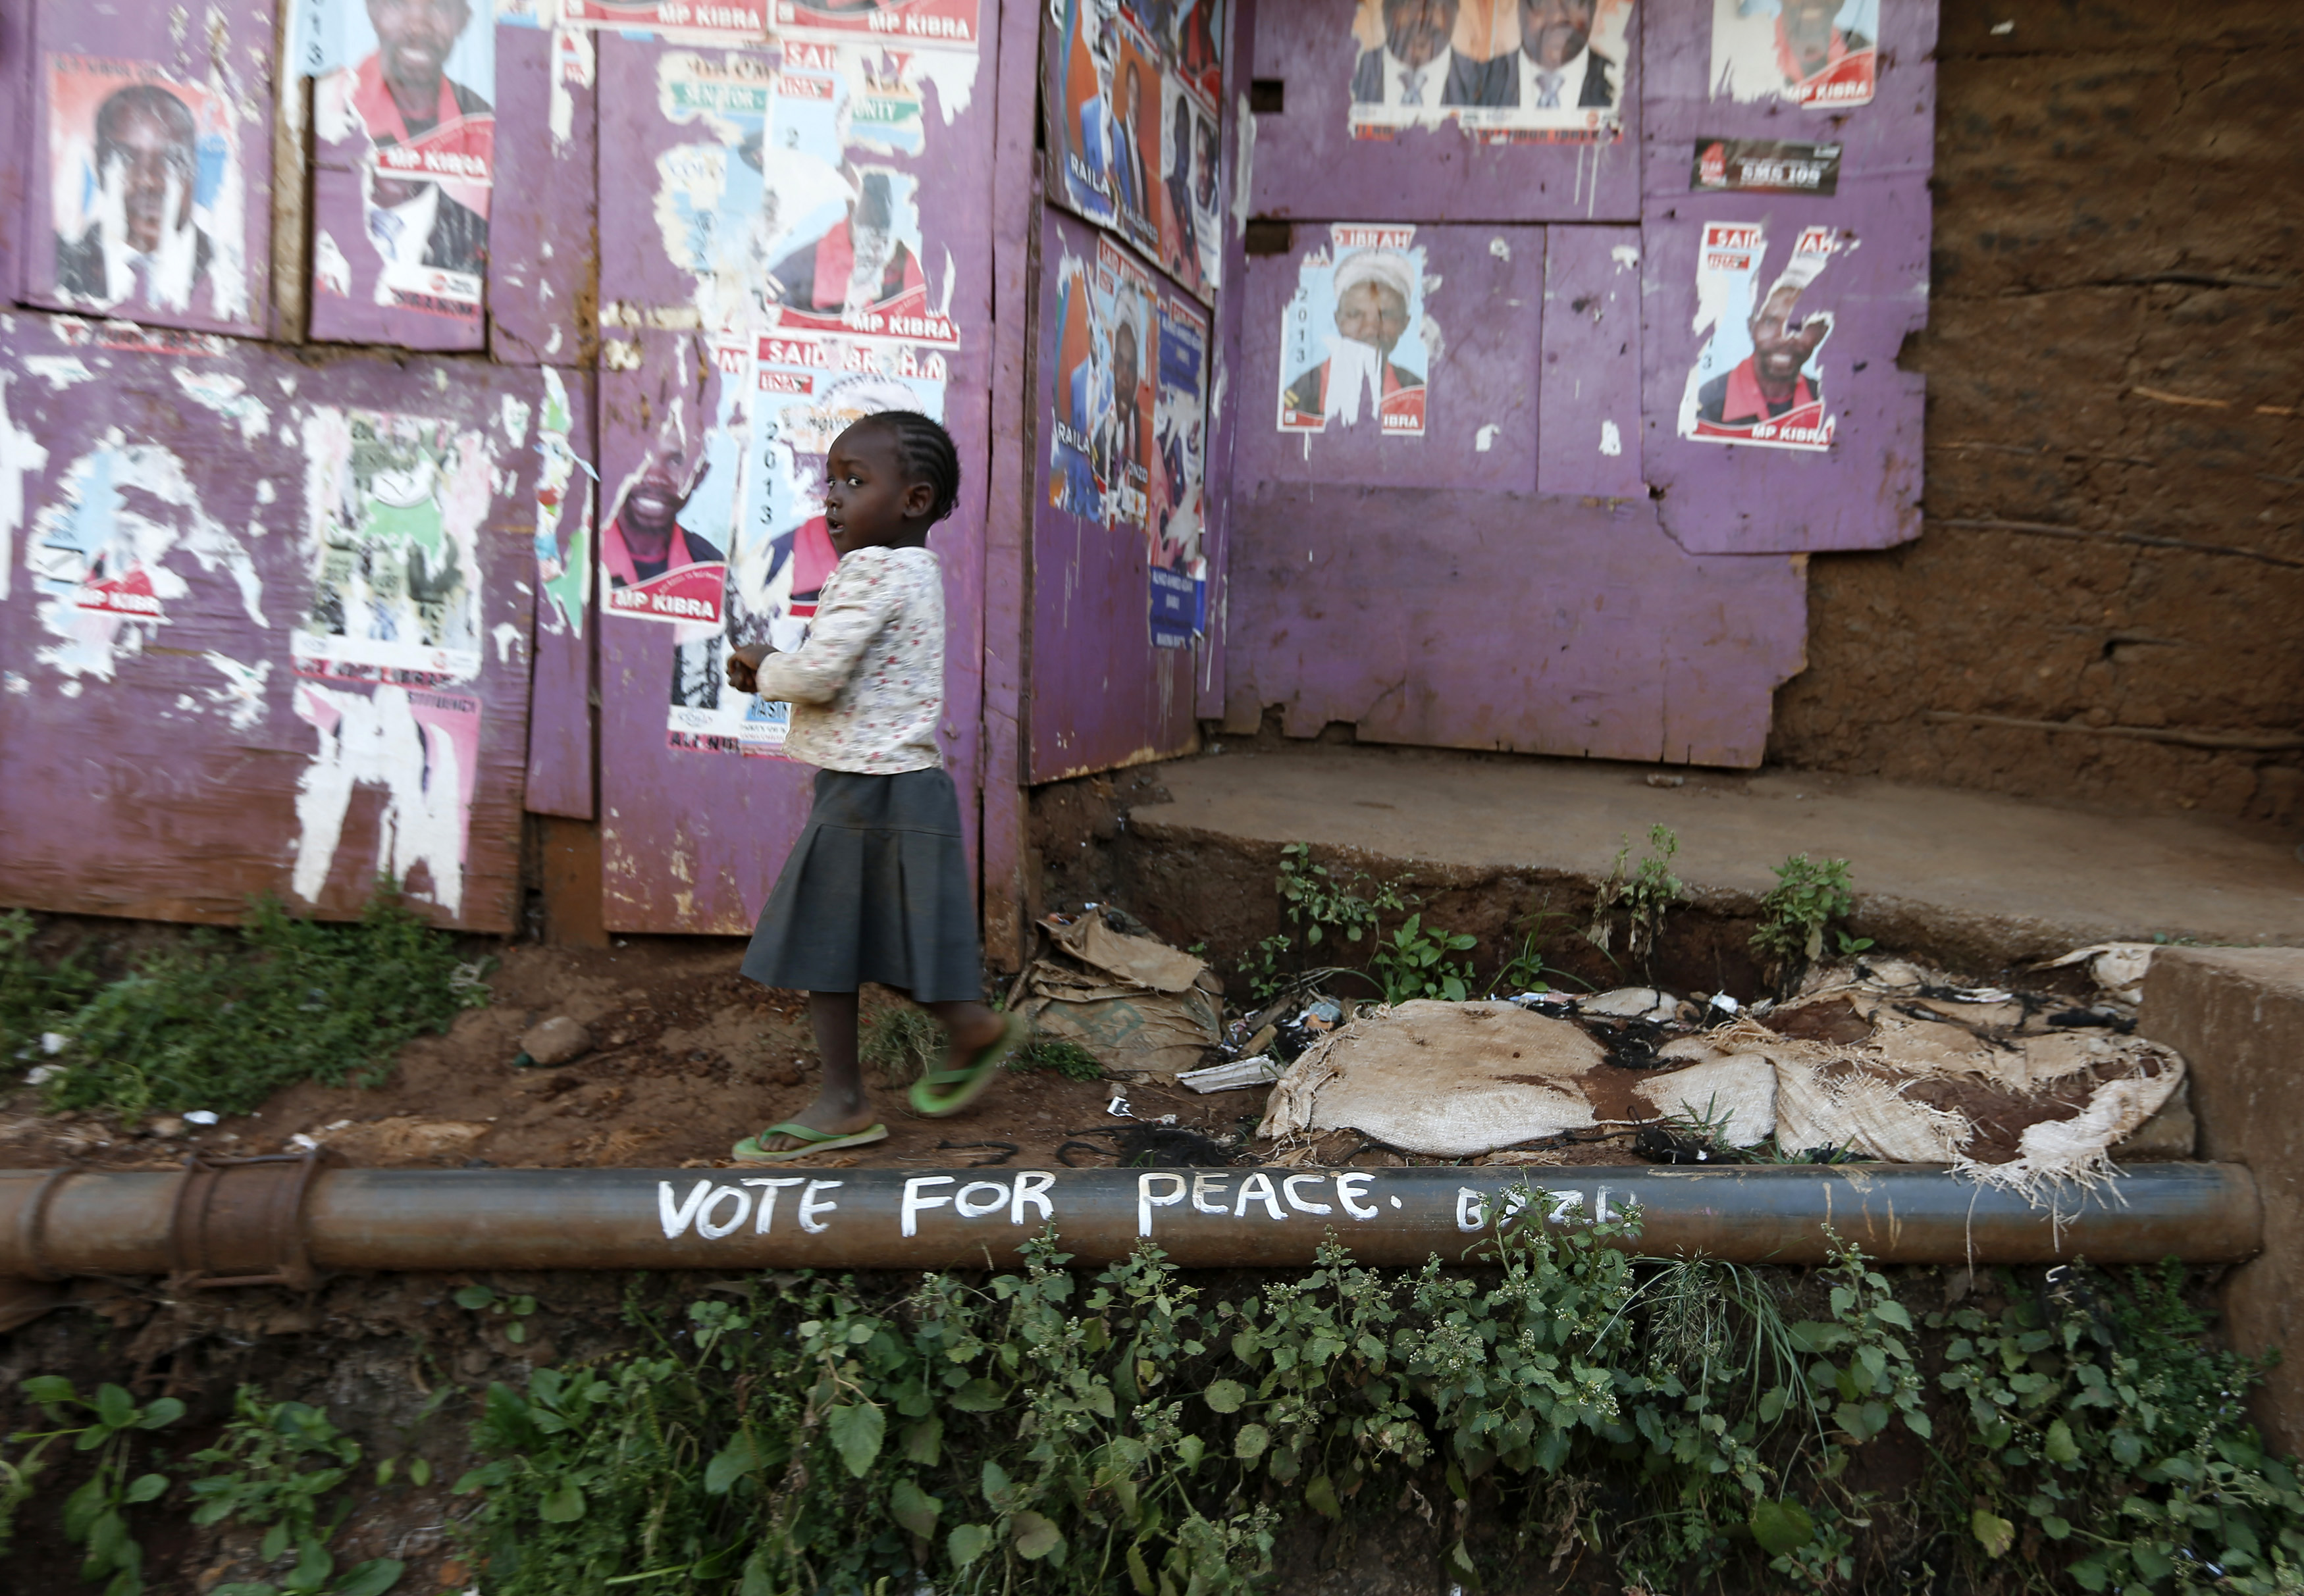 فتاة شابة تمشي بجانب الملصقات الانتخابية الماضية وشعار يدعو إلى السلام في حي كيبيرا الفقير في نيروبي 7 آذار 2013